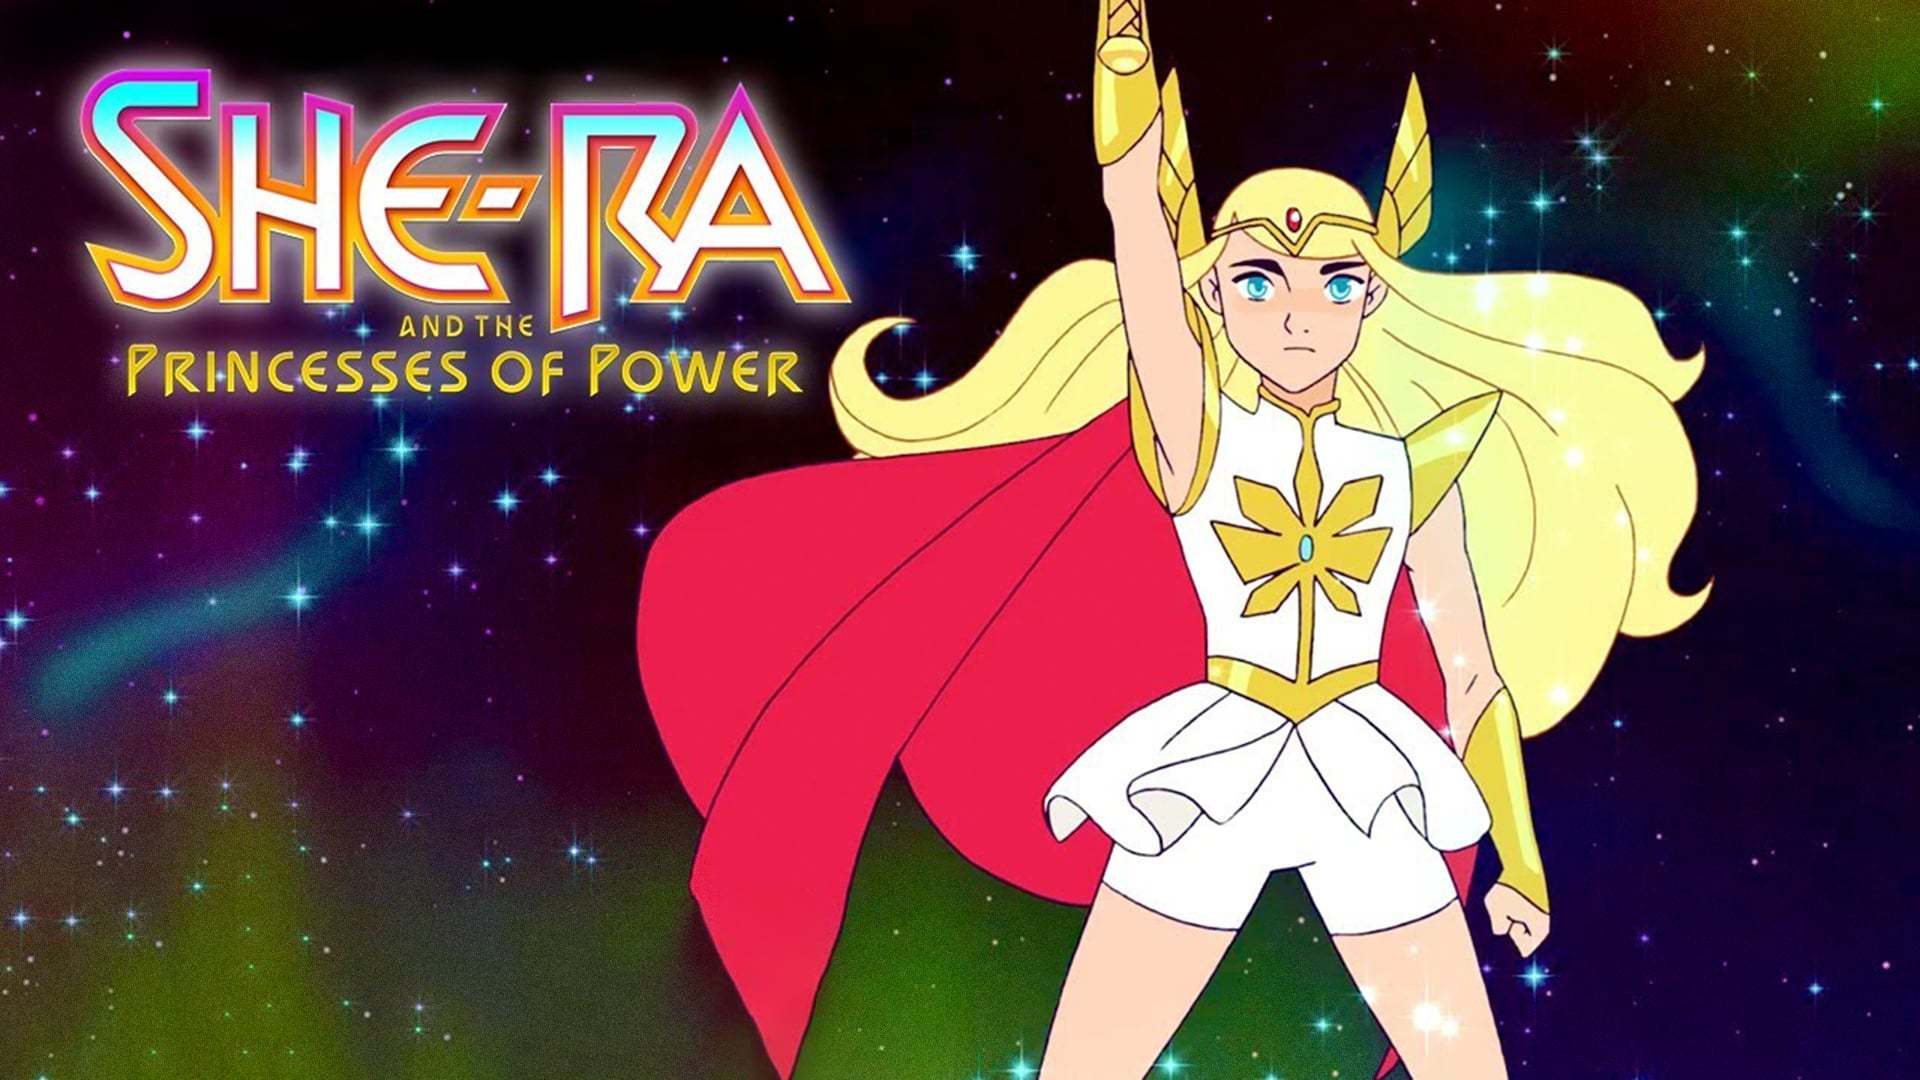 ში-რა და ძალაუფლების პრინცესა / She-Ra and the Princesses of Power